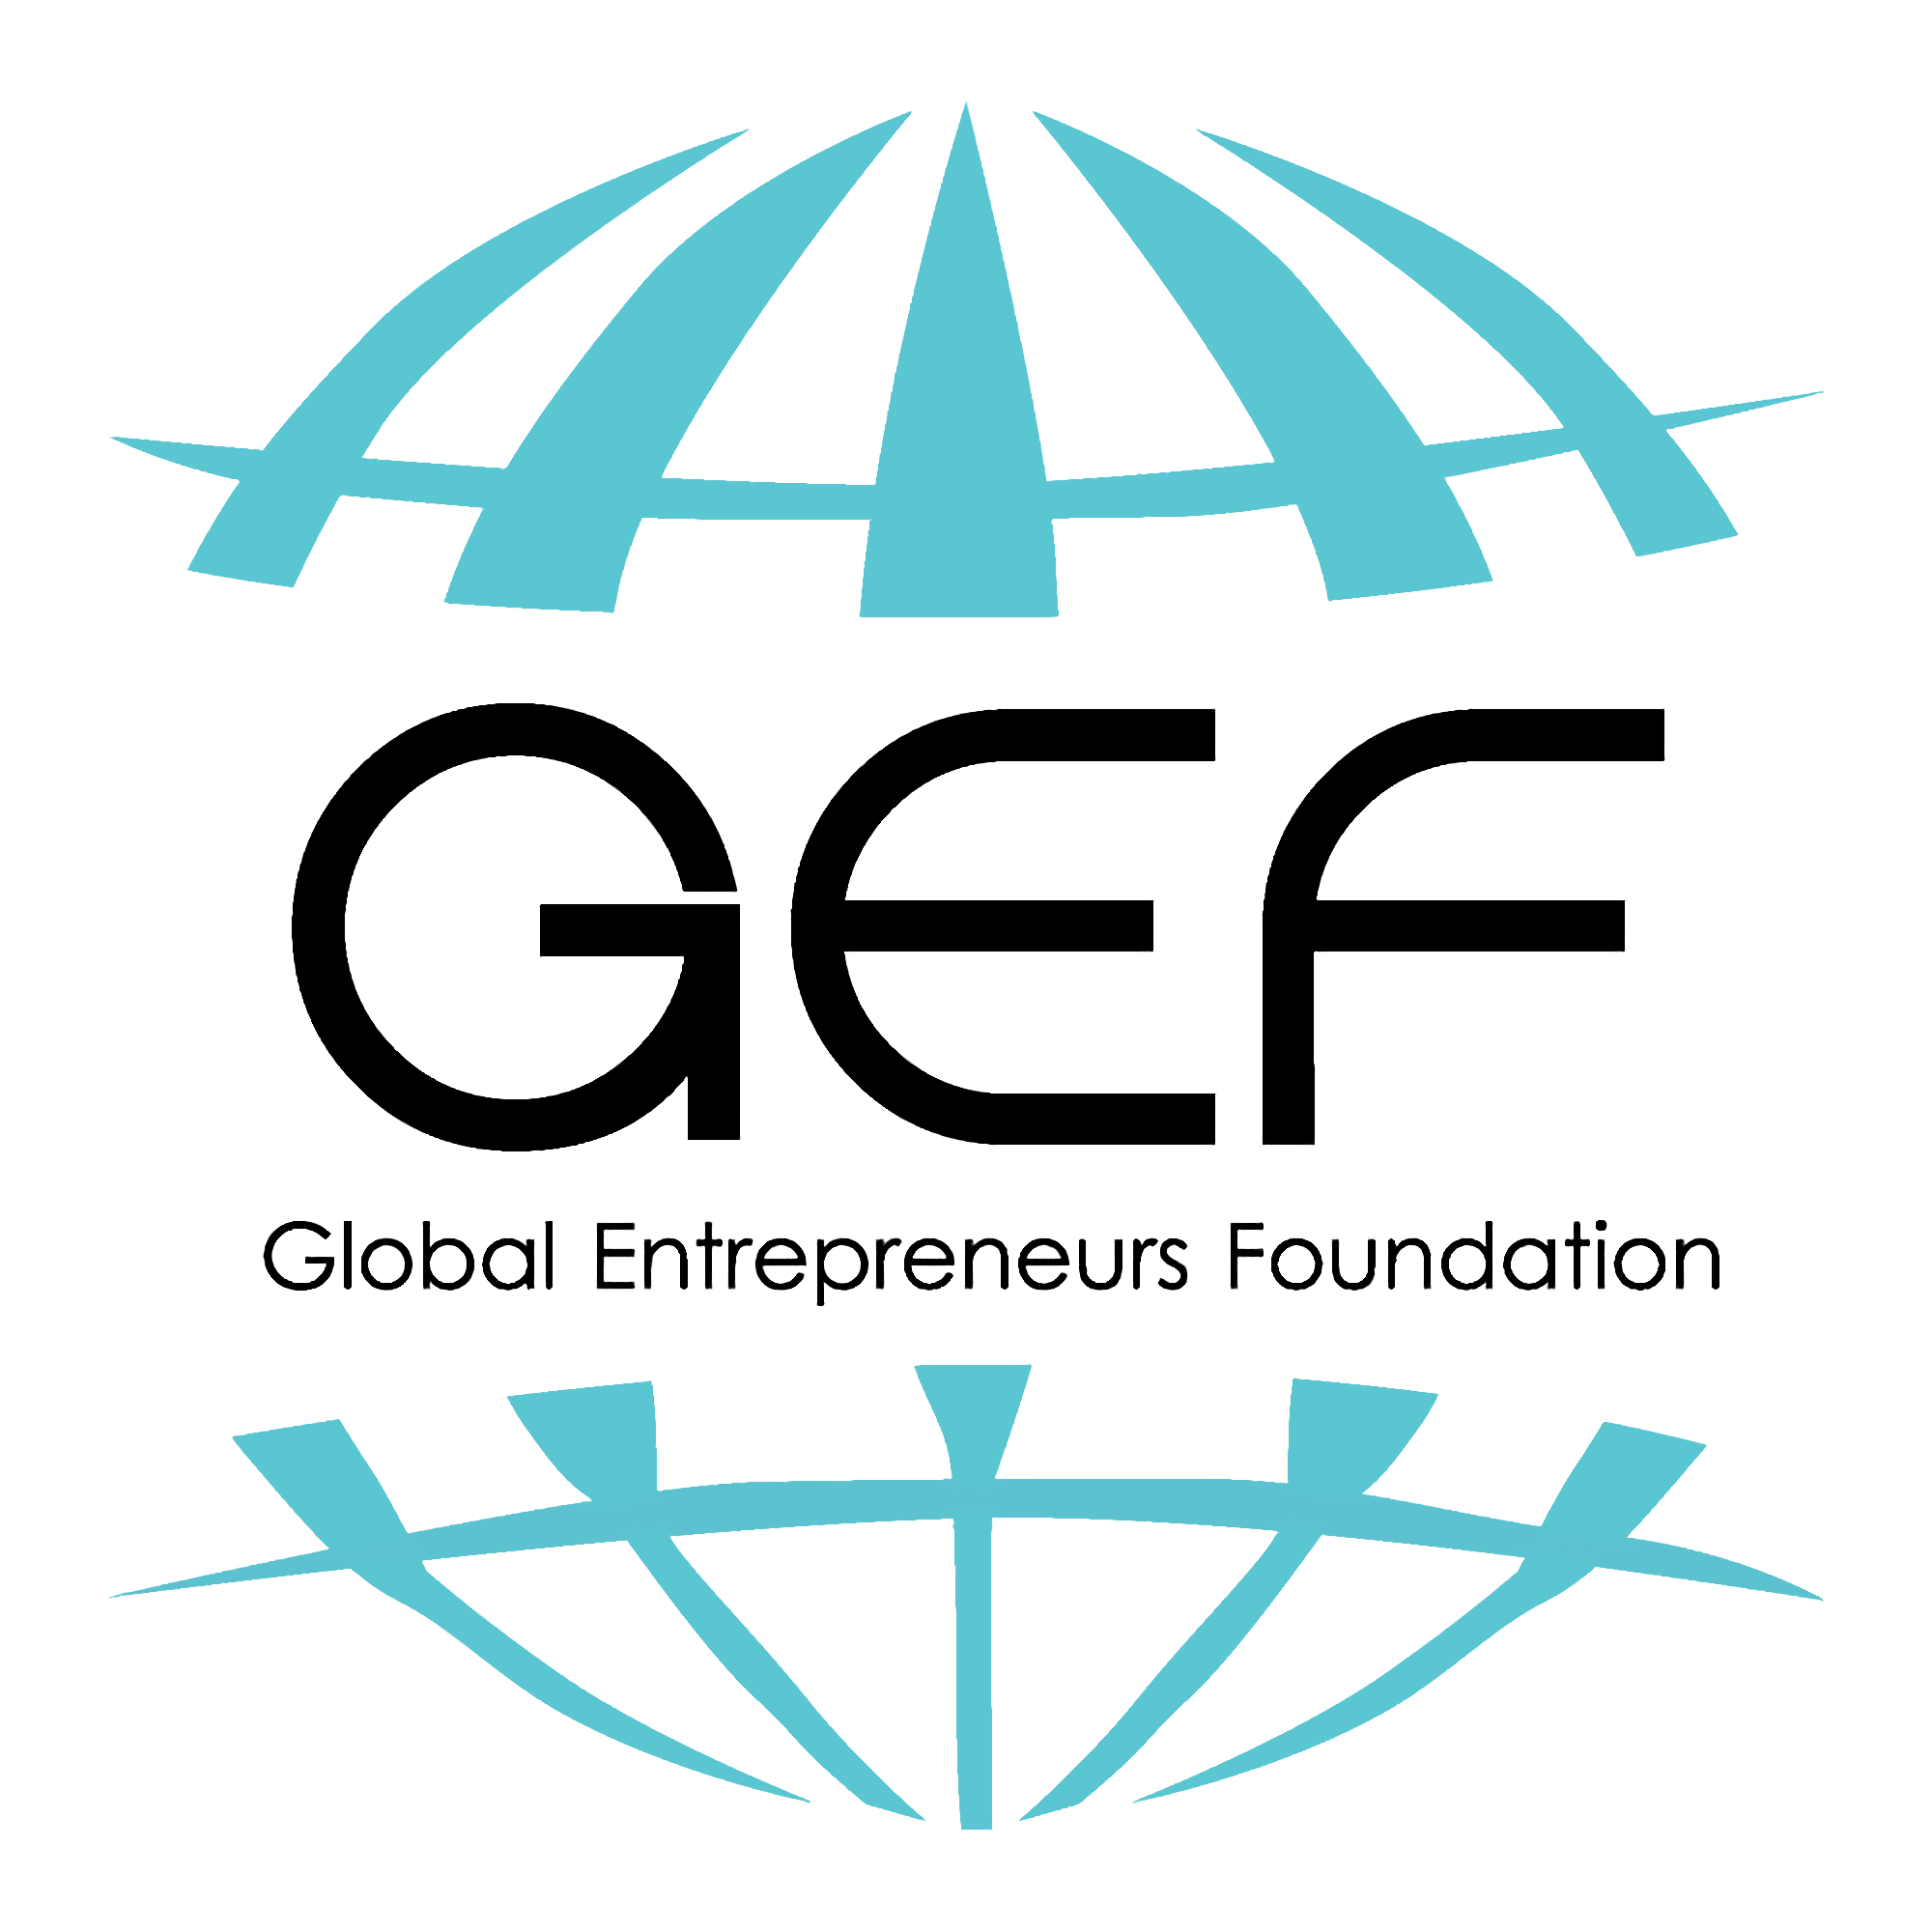 Global Entrepreneurs Foundation logo